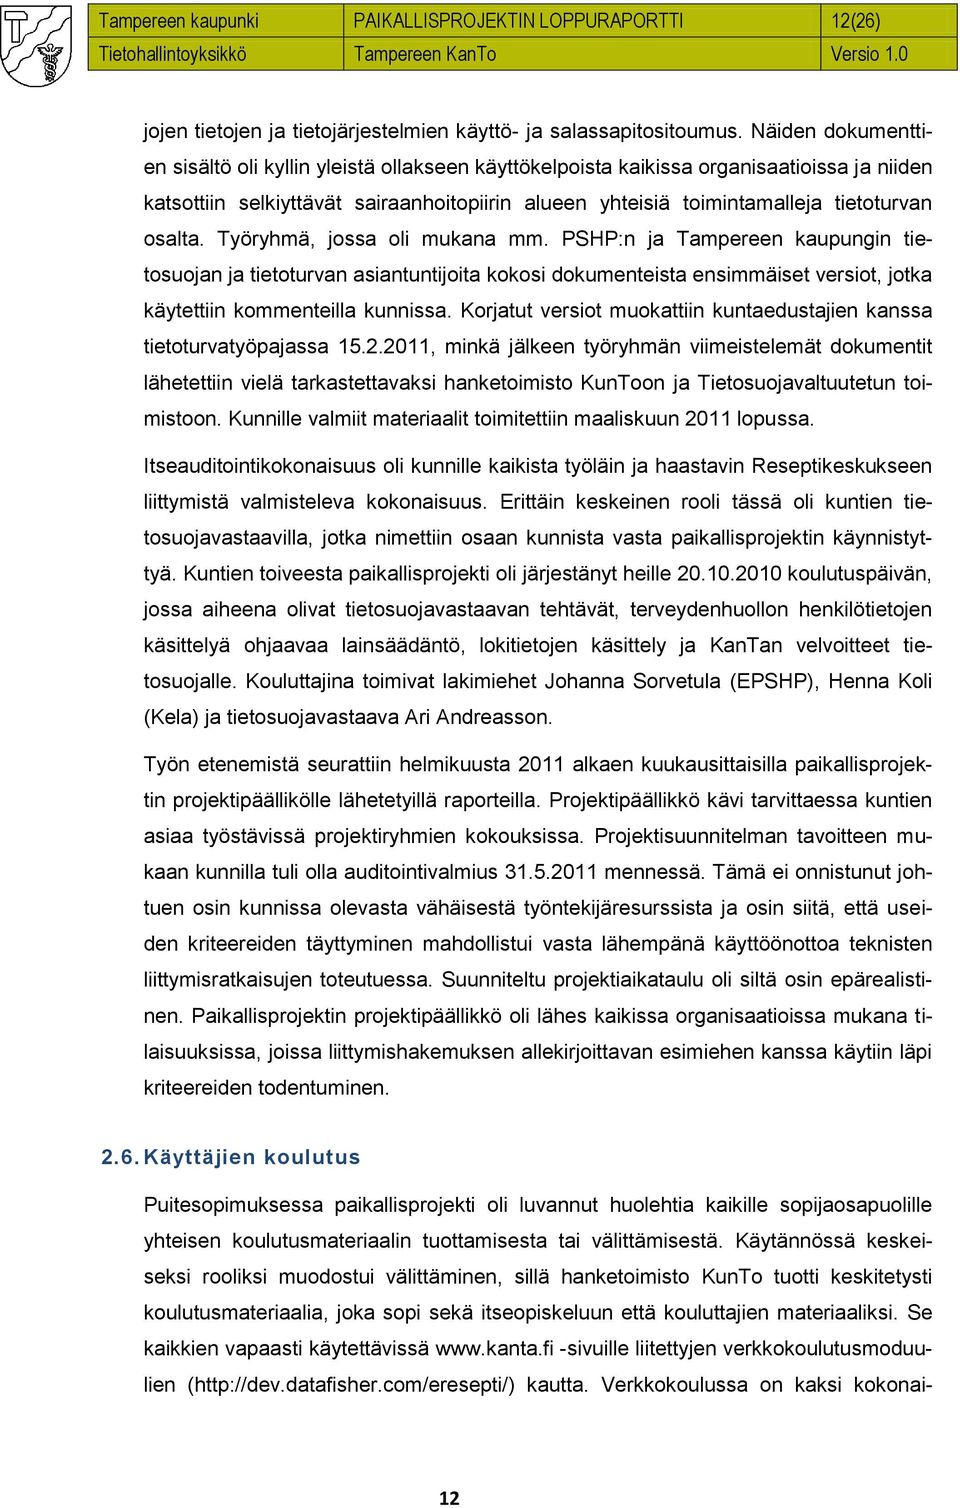 osalta. Työryhmä, jossa oli mukana mm. PSHP:n ja Tampereen kaupungin tietosuojan ja tietoturvan asiantuntijoita kokosi dokumenteista ensimmäiset versiot, jotka käytettiin kommenteilla kunnissa.